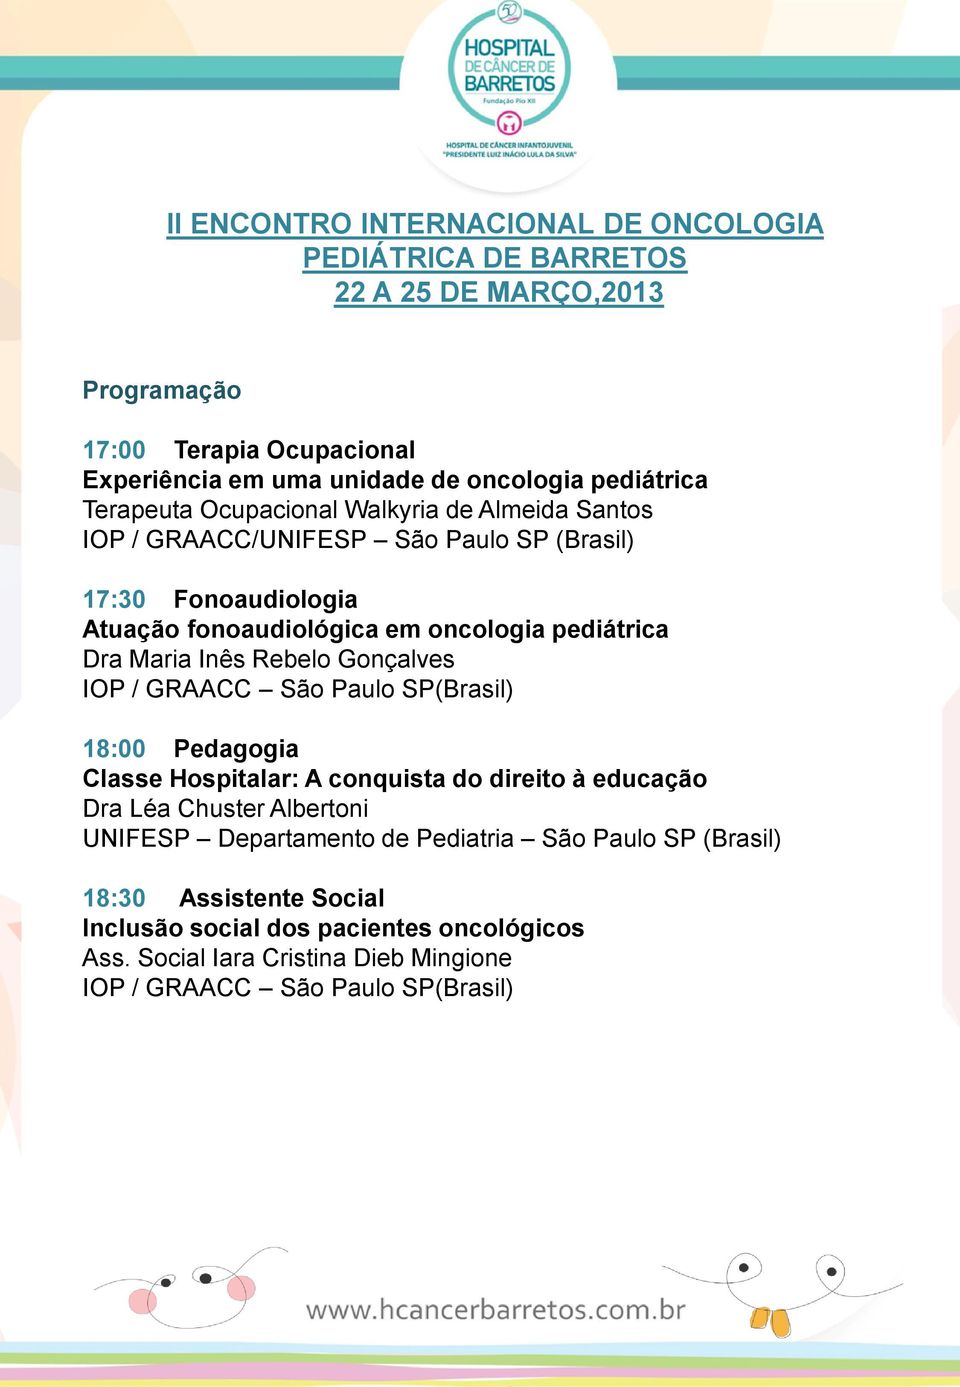 SP(Brasil) 18:00 Pedagogia Classe Hospitalar: A conquista do direito à educação Dra Léa Chuster Albertoni UNIFESP Departamento de Pediatria São